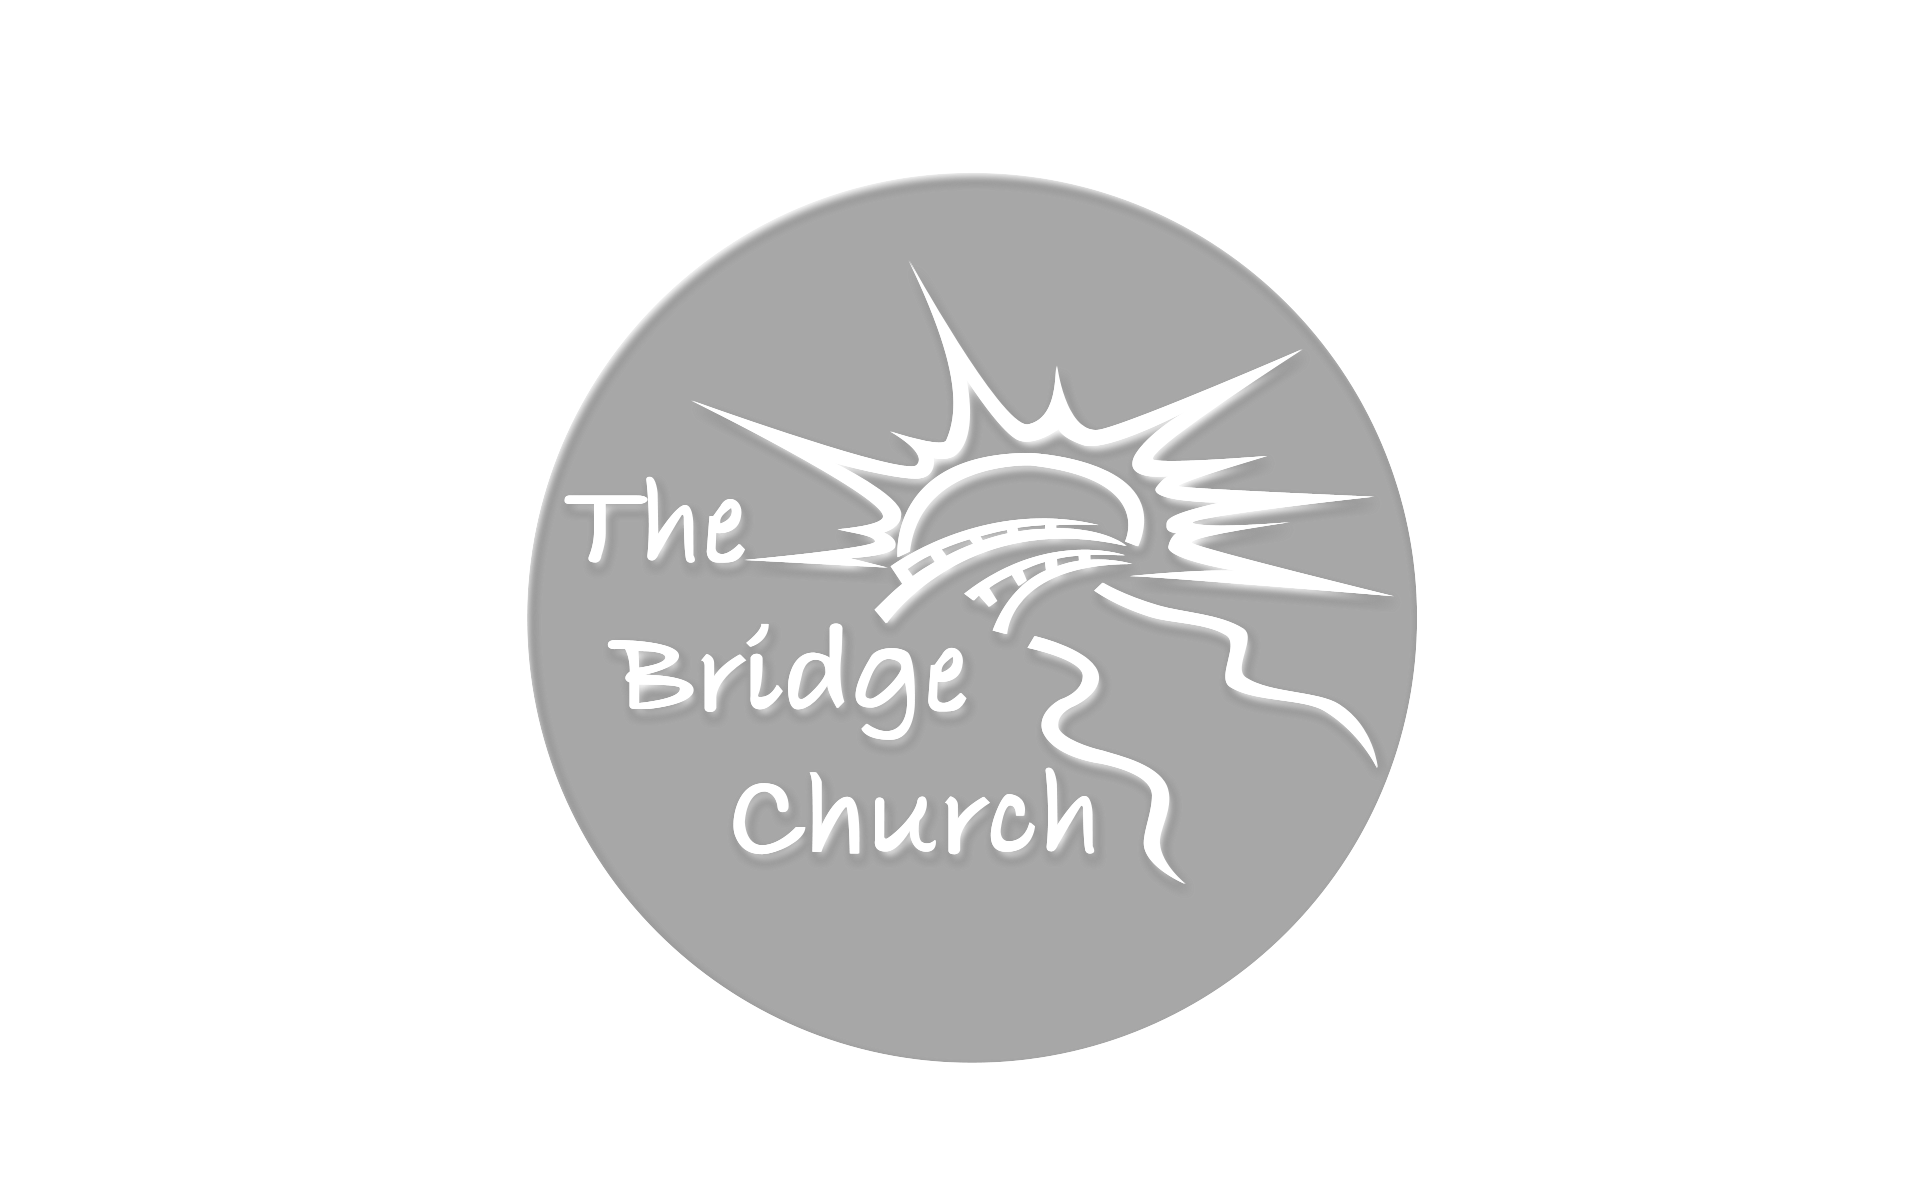 The Bridge Church